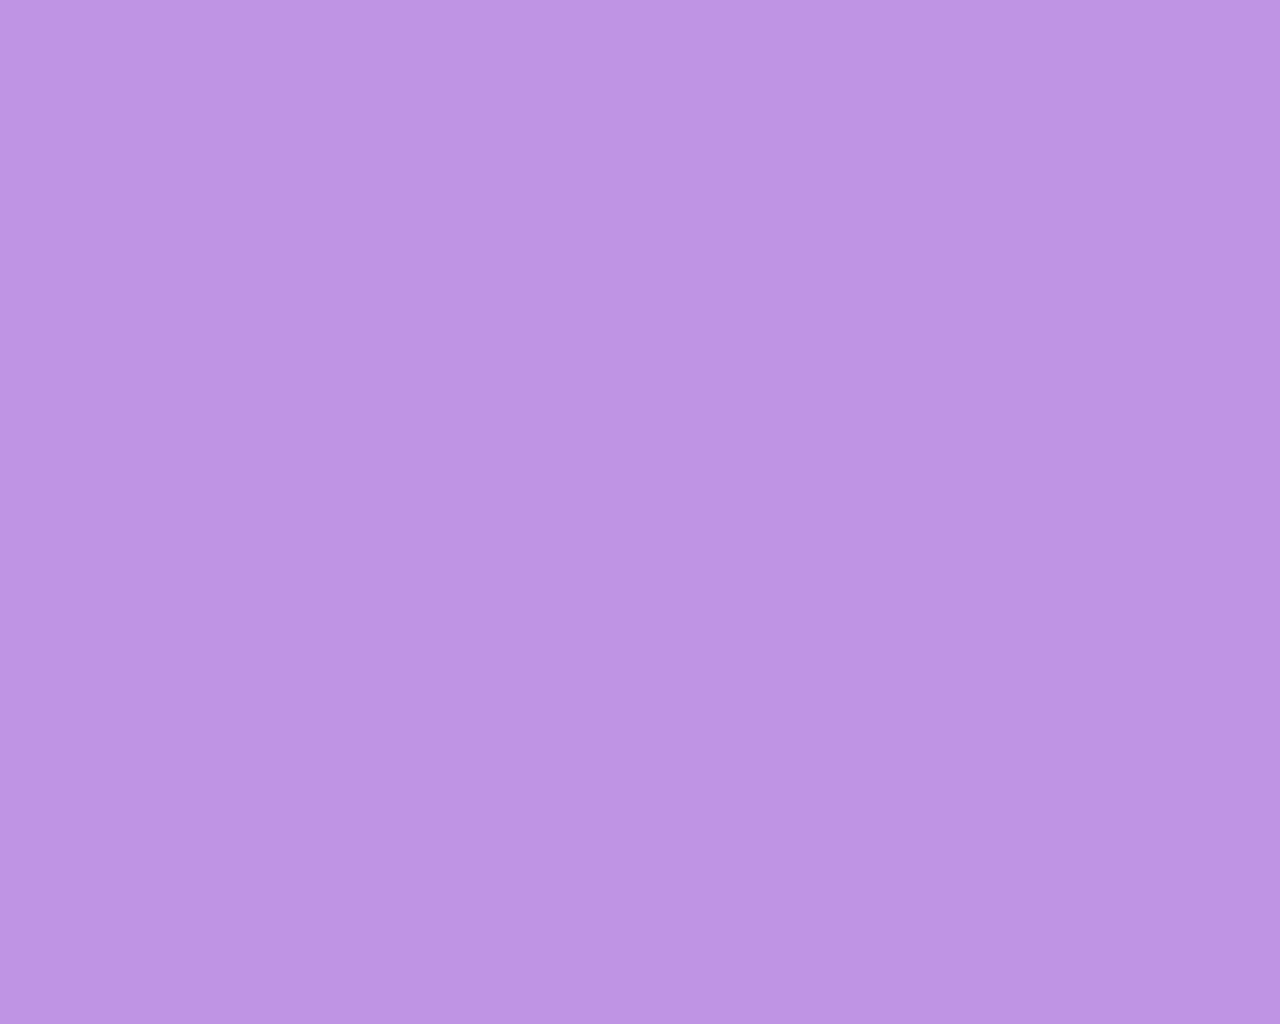 Solid Lavender Color Wallpaper Bright Purple Pin Light